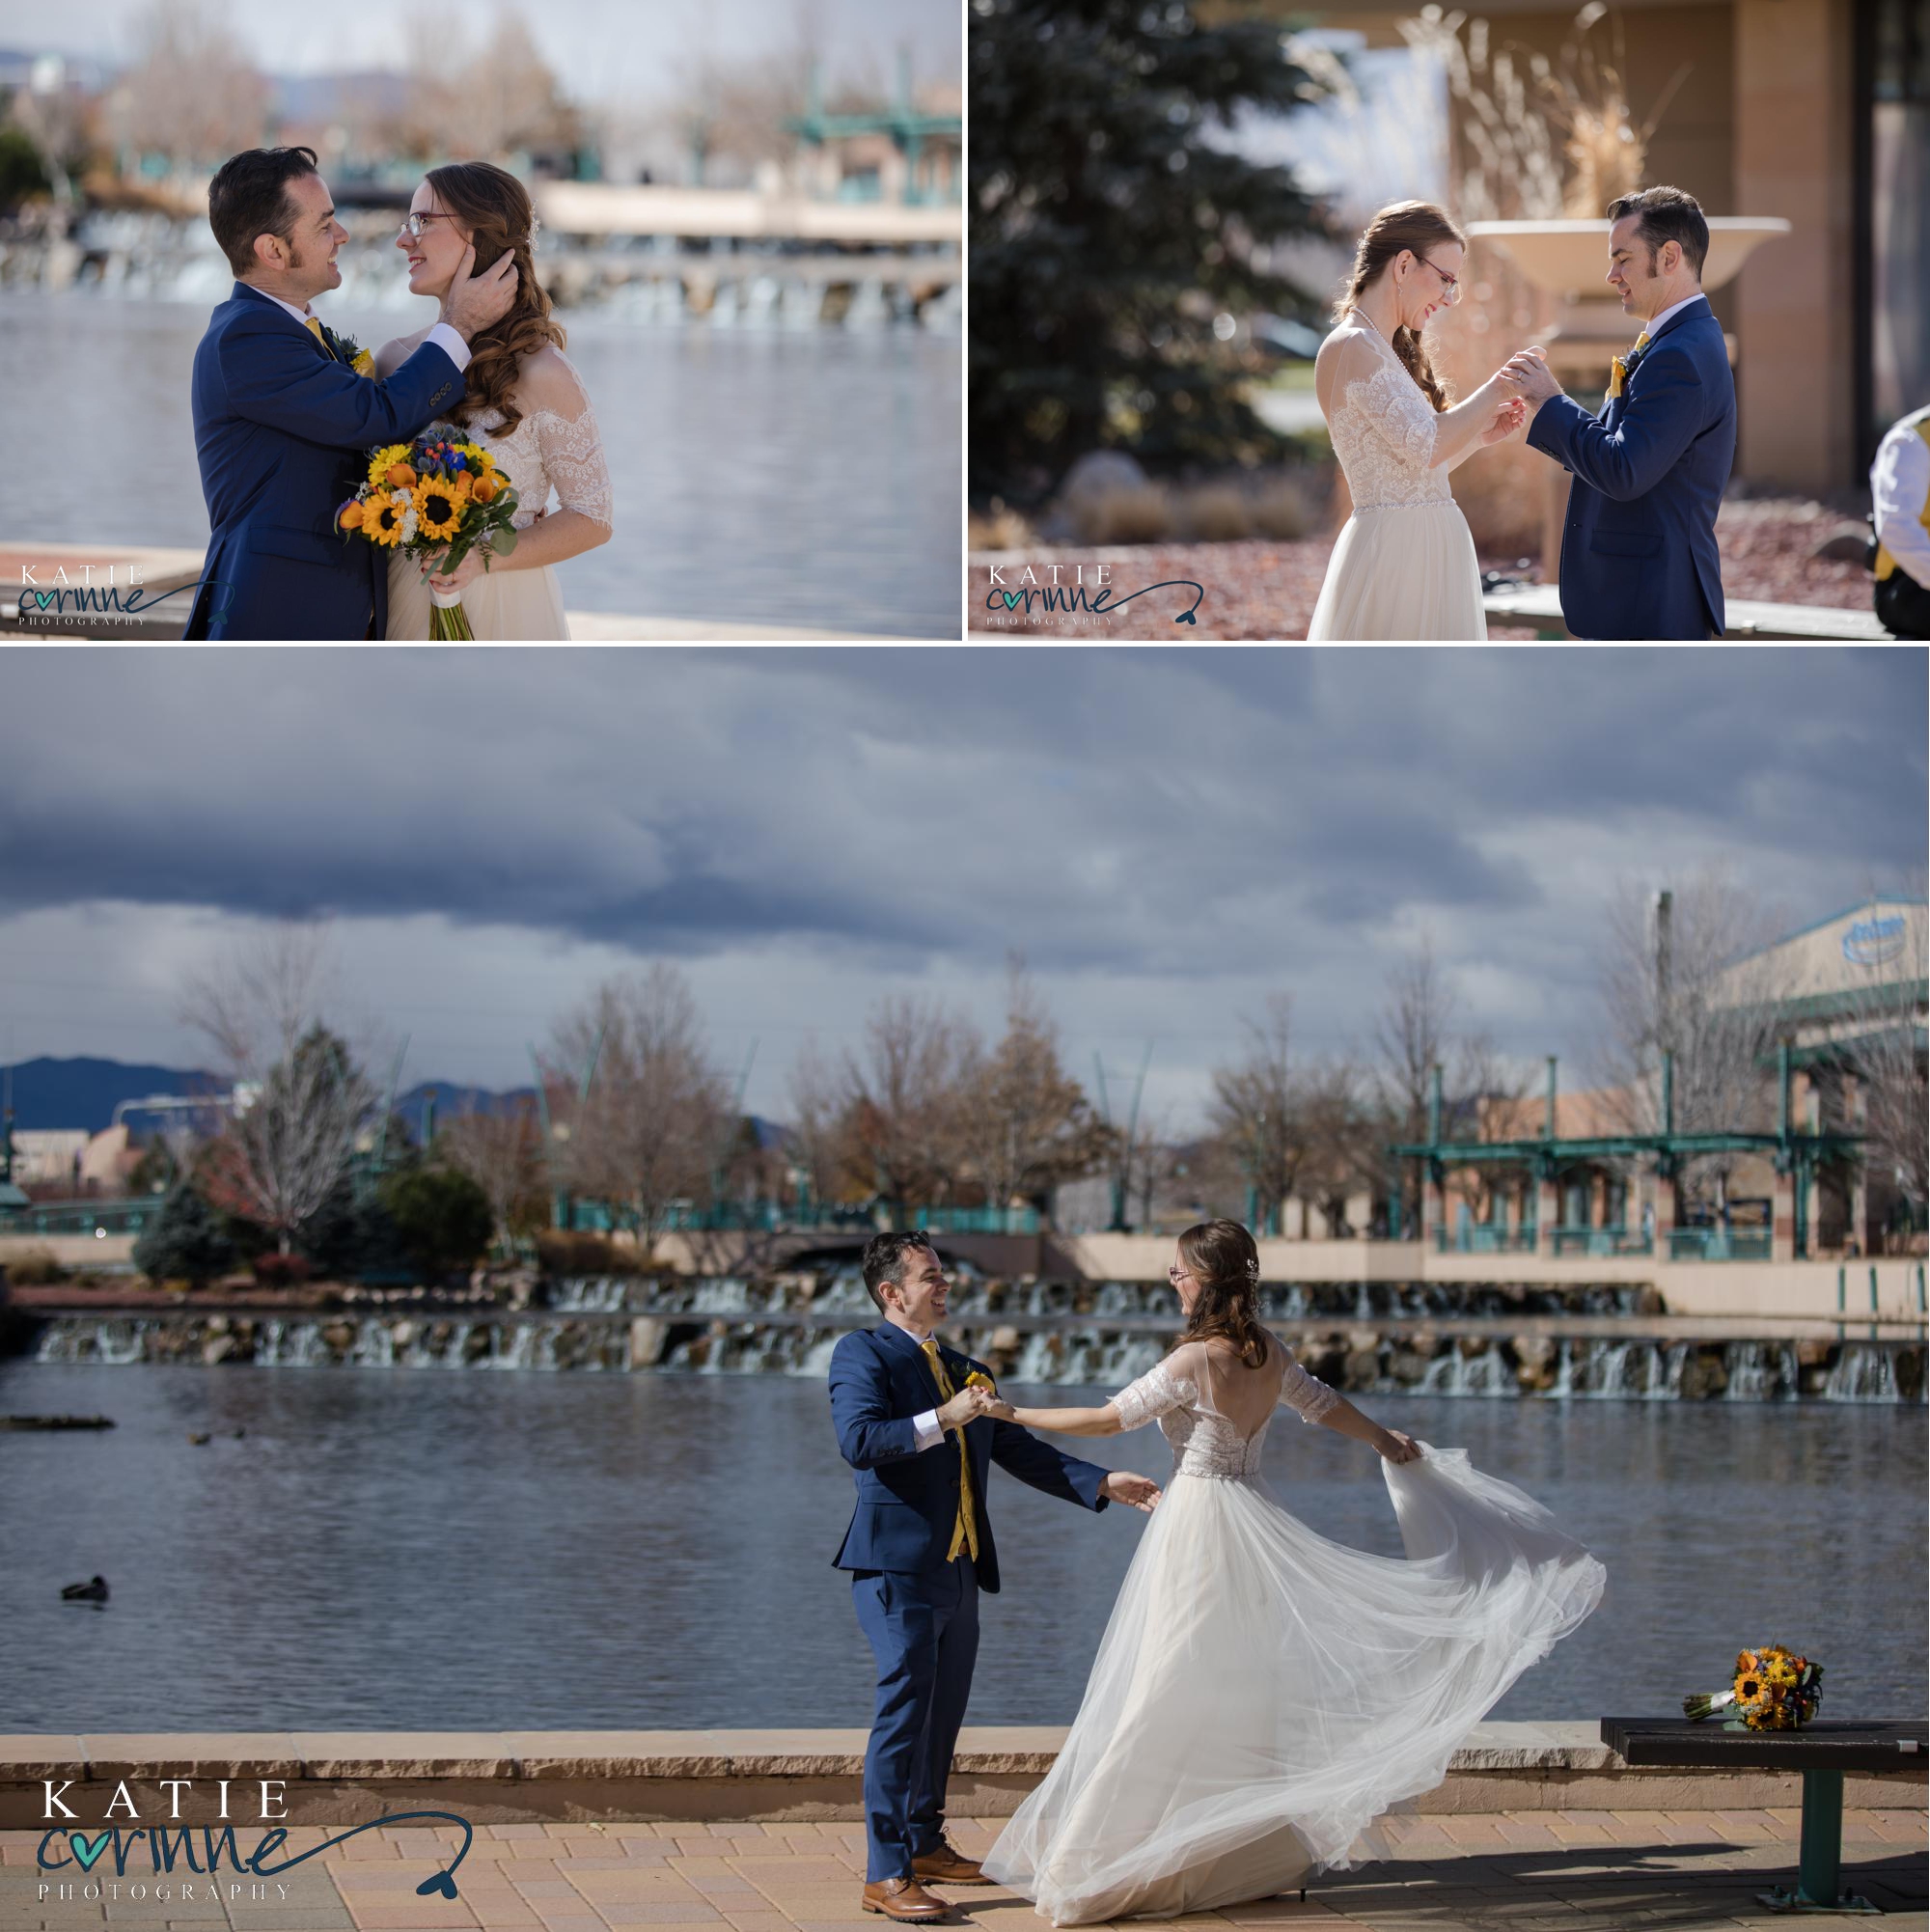 Colorado wedding photographer capture fun couple